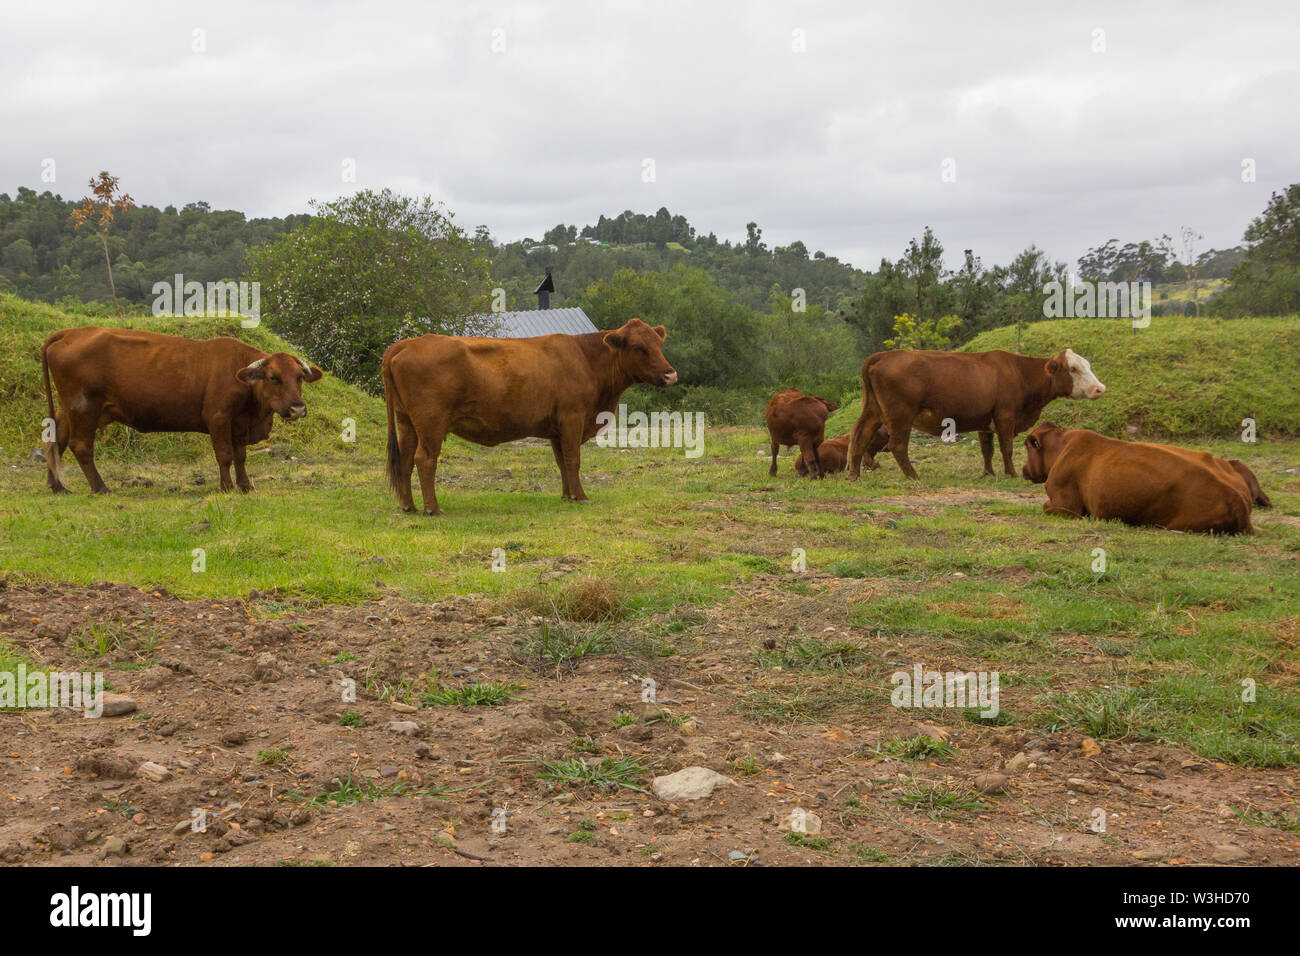 Les vaches brunes ou les intrusions dans les bovins Grootvadersbosch réserve naturelle dans les montagnes du Cap en Afrique du Sud ayant égaré hors de leur pâturage Banque D'Images